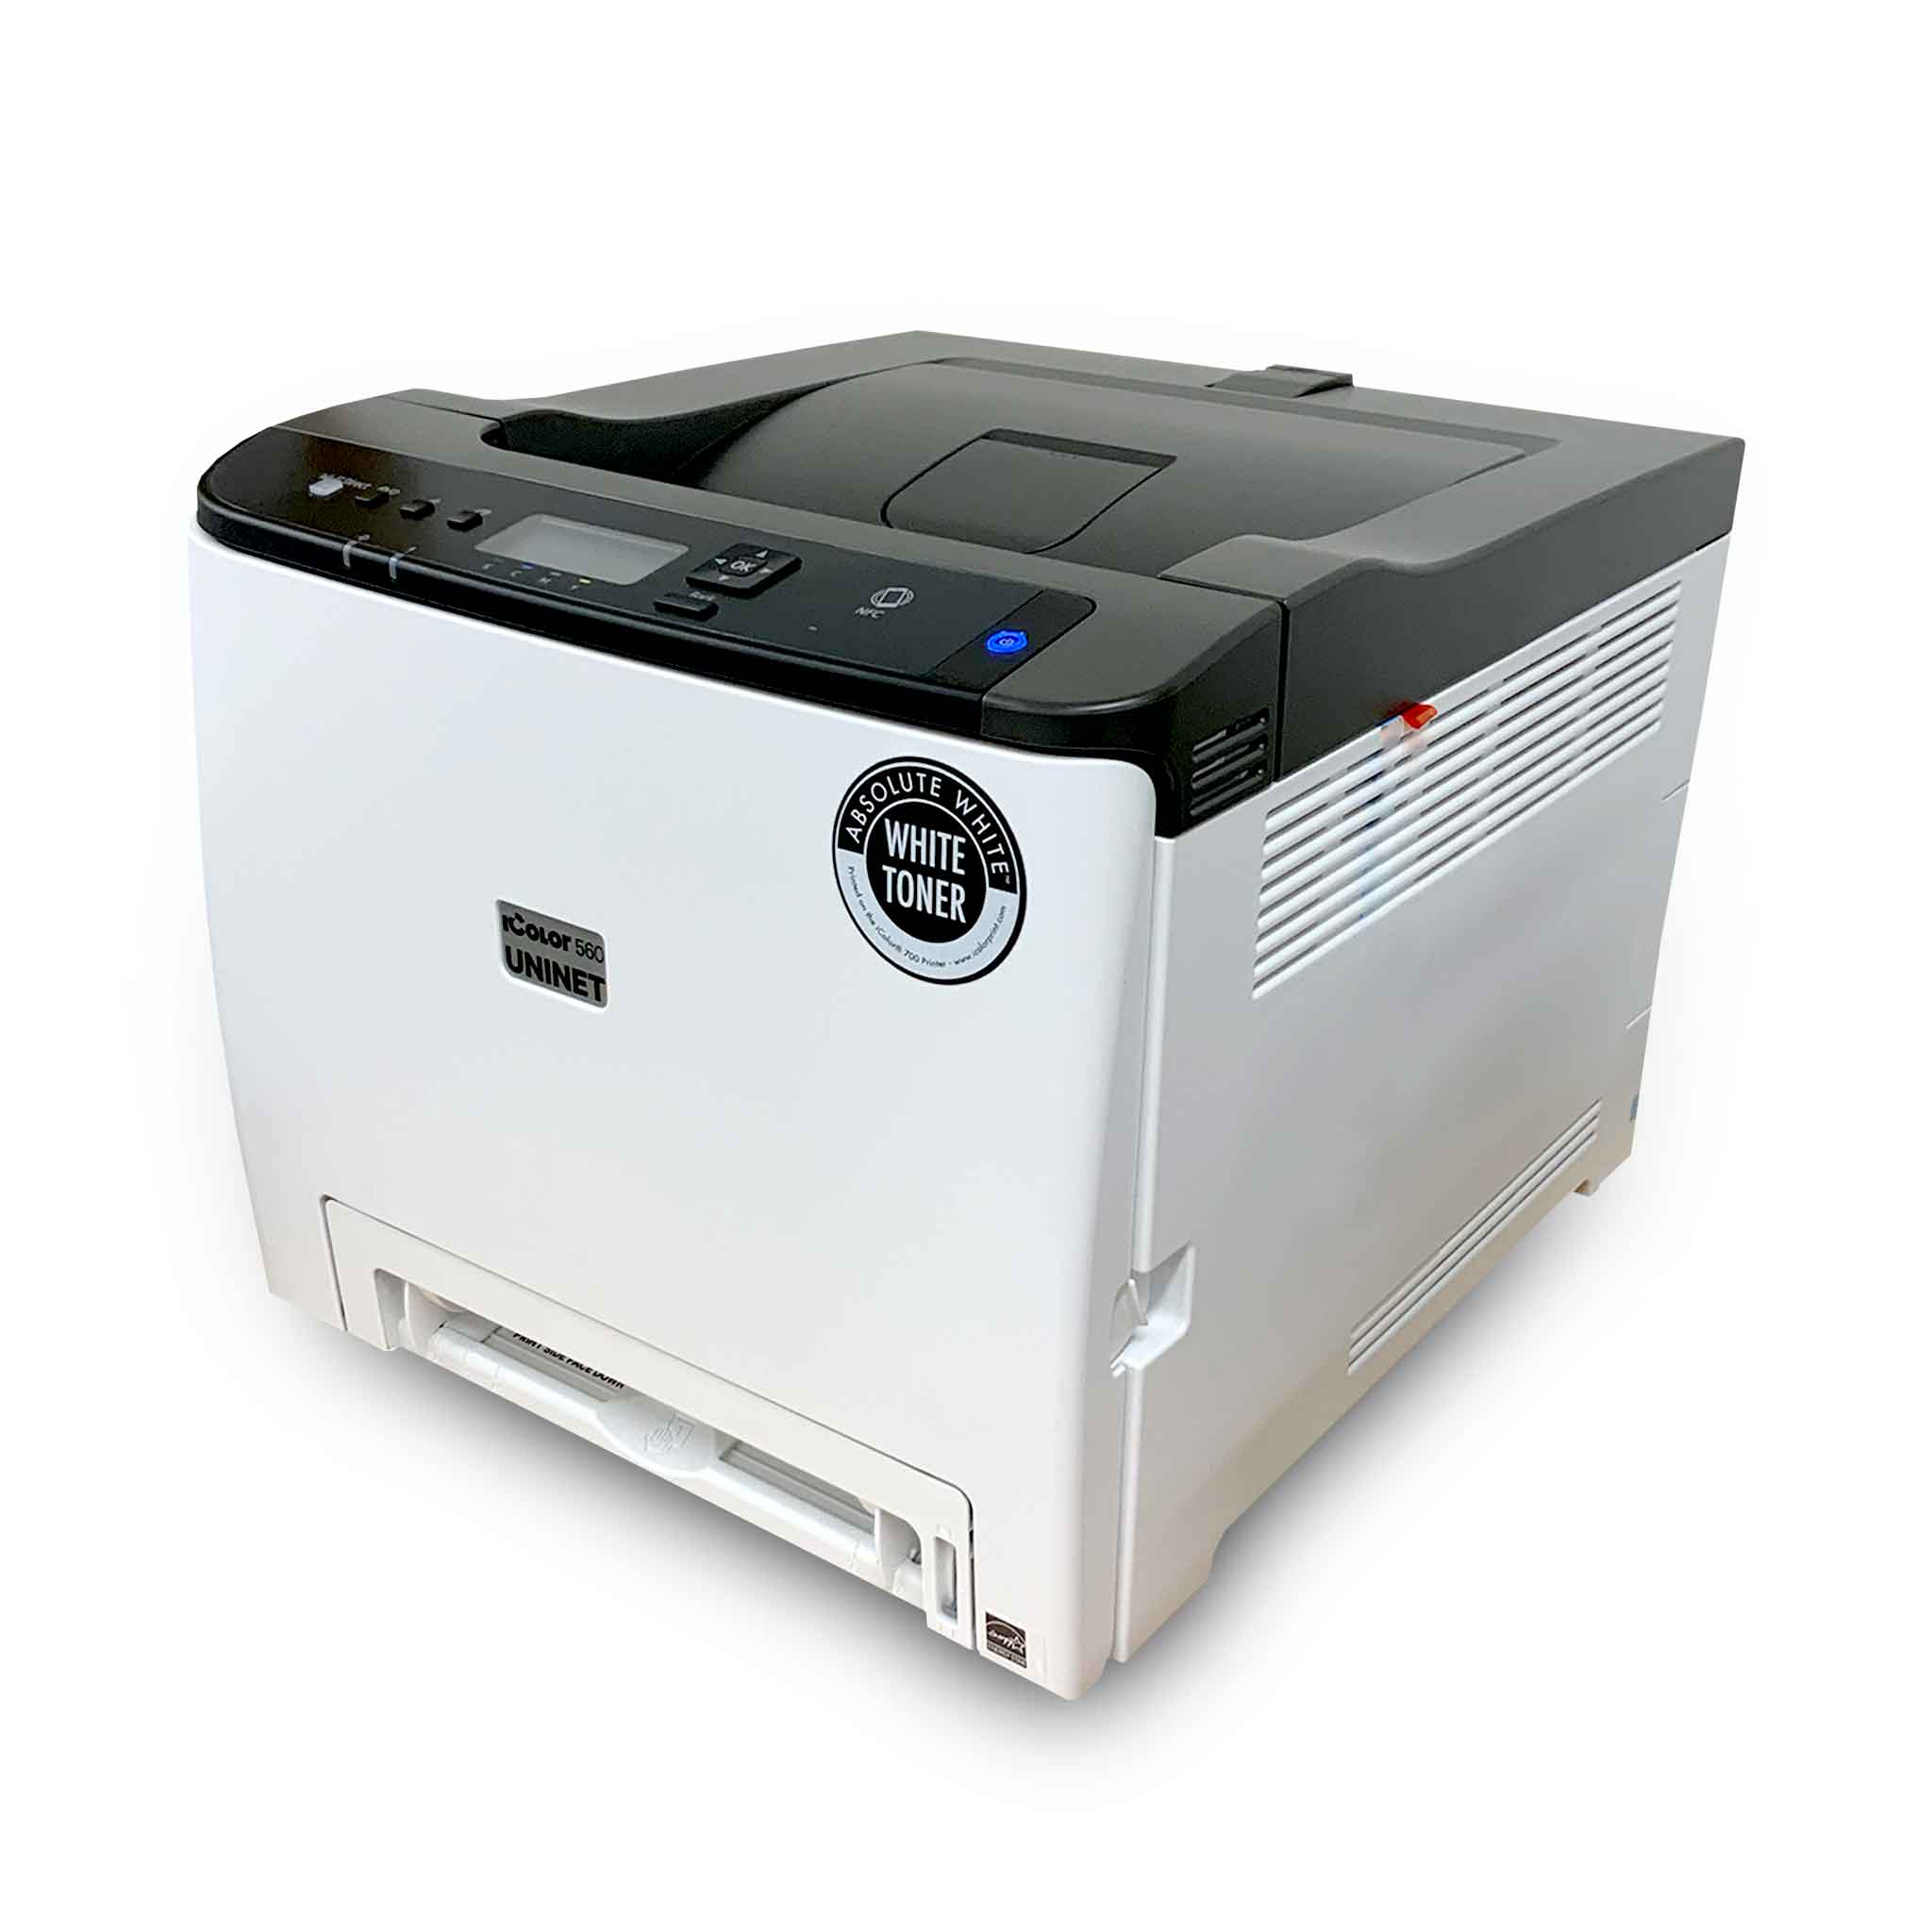 Uninet iColor® 560 White Toner Transfer printer